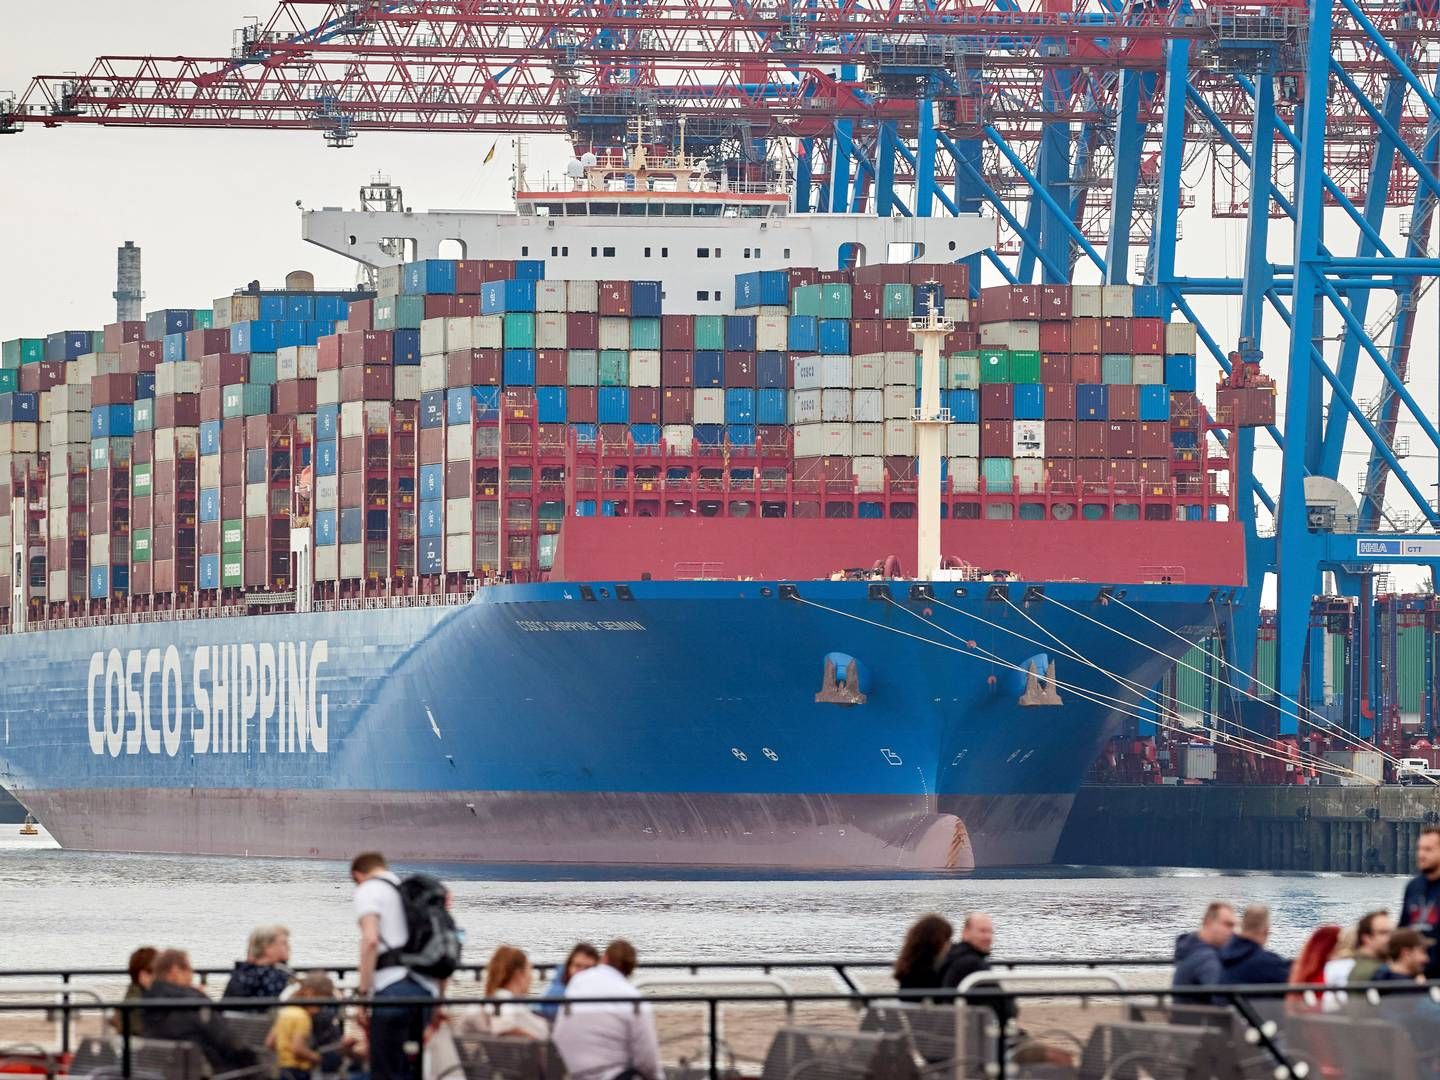 Cosco Shipping Ports' køb i juni af en andel i Tollerort-terminalen i Hamborg er det seneste kinesiske indtog i europæiske havne. | Photo: Georg Wendt/AP/Ritzau Scanpix